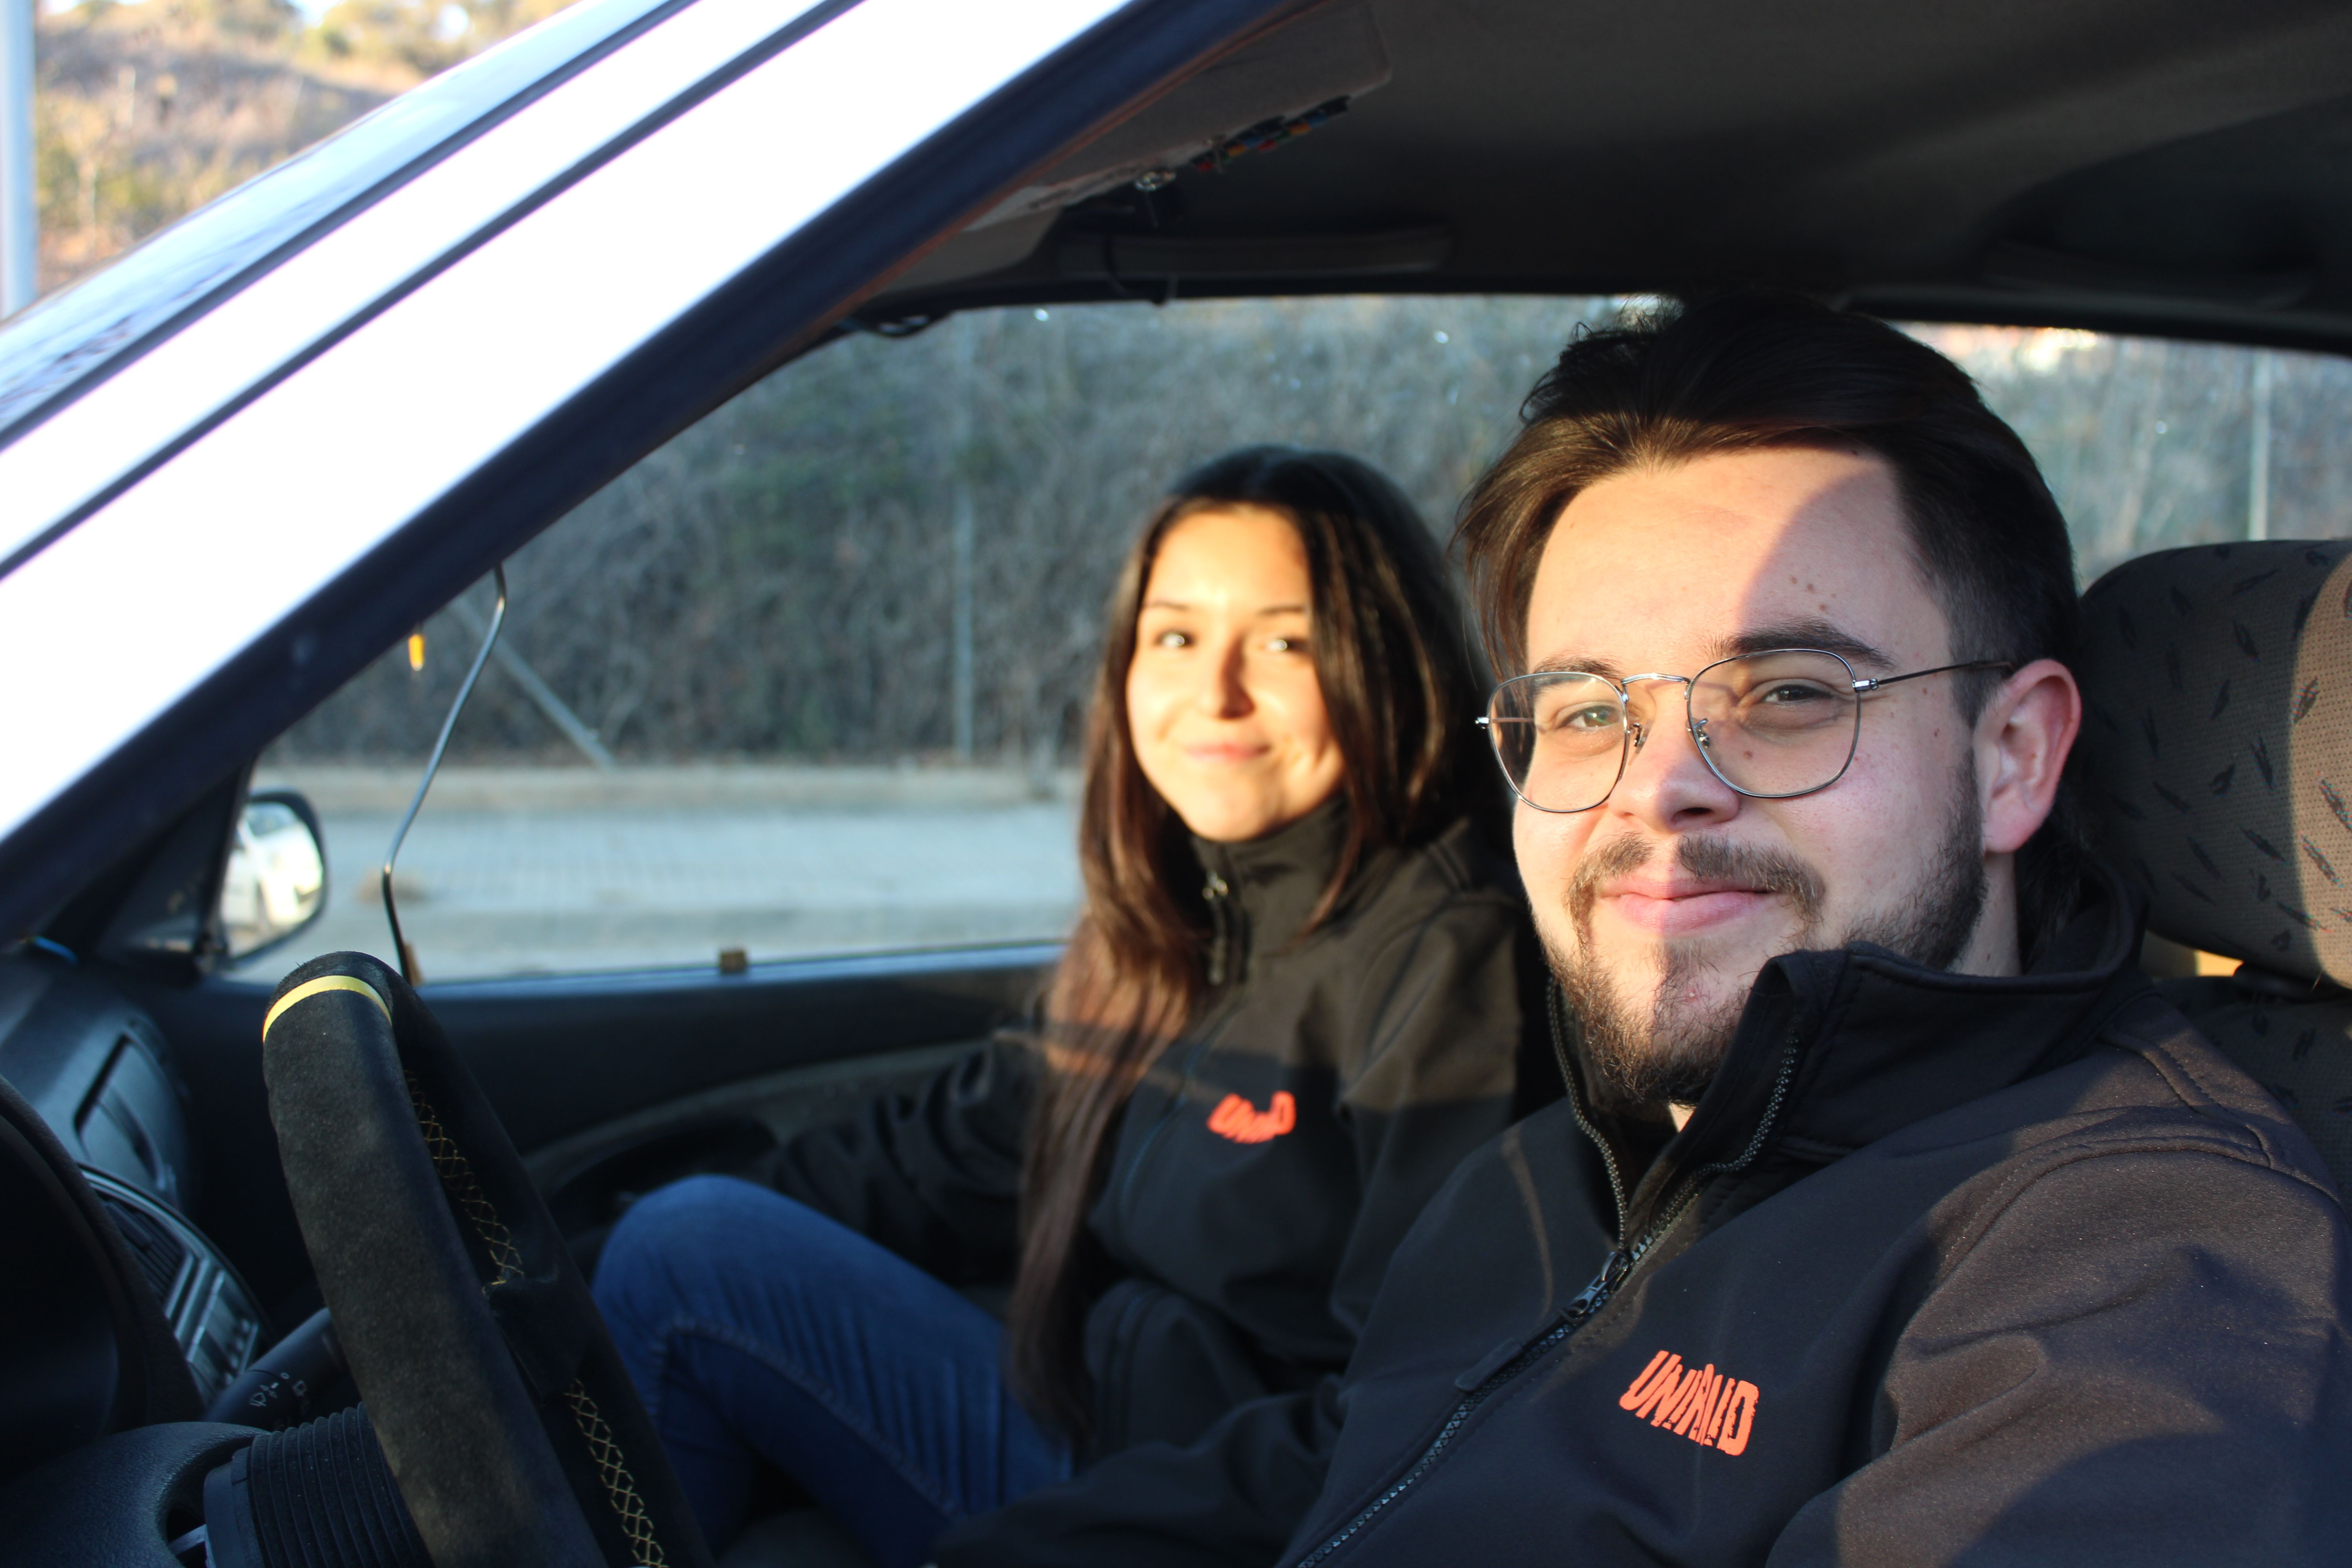 L'Amanda i el Carlos han estudiat a la UPC i han participat en diversos campionats universitaris d'automobilisme. FOTO: Guillem Barrera